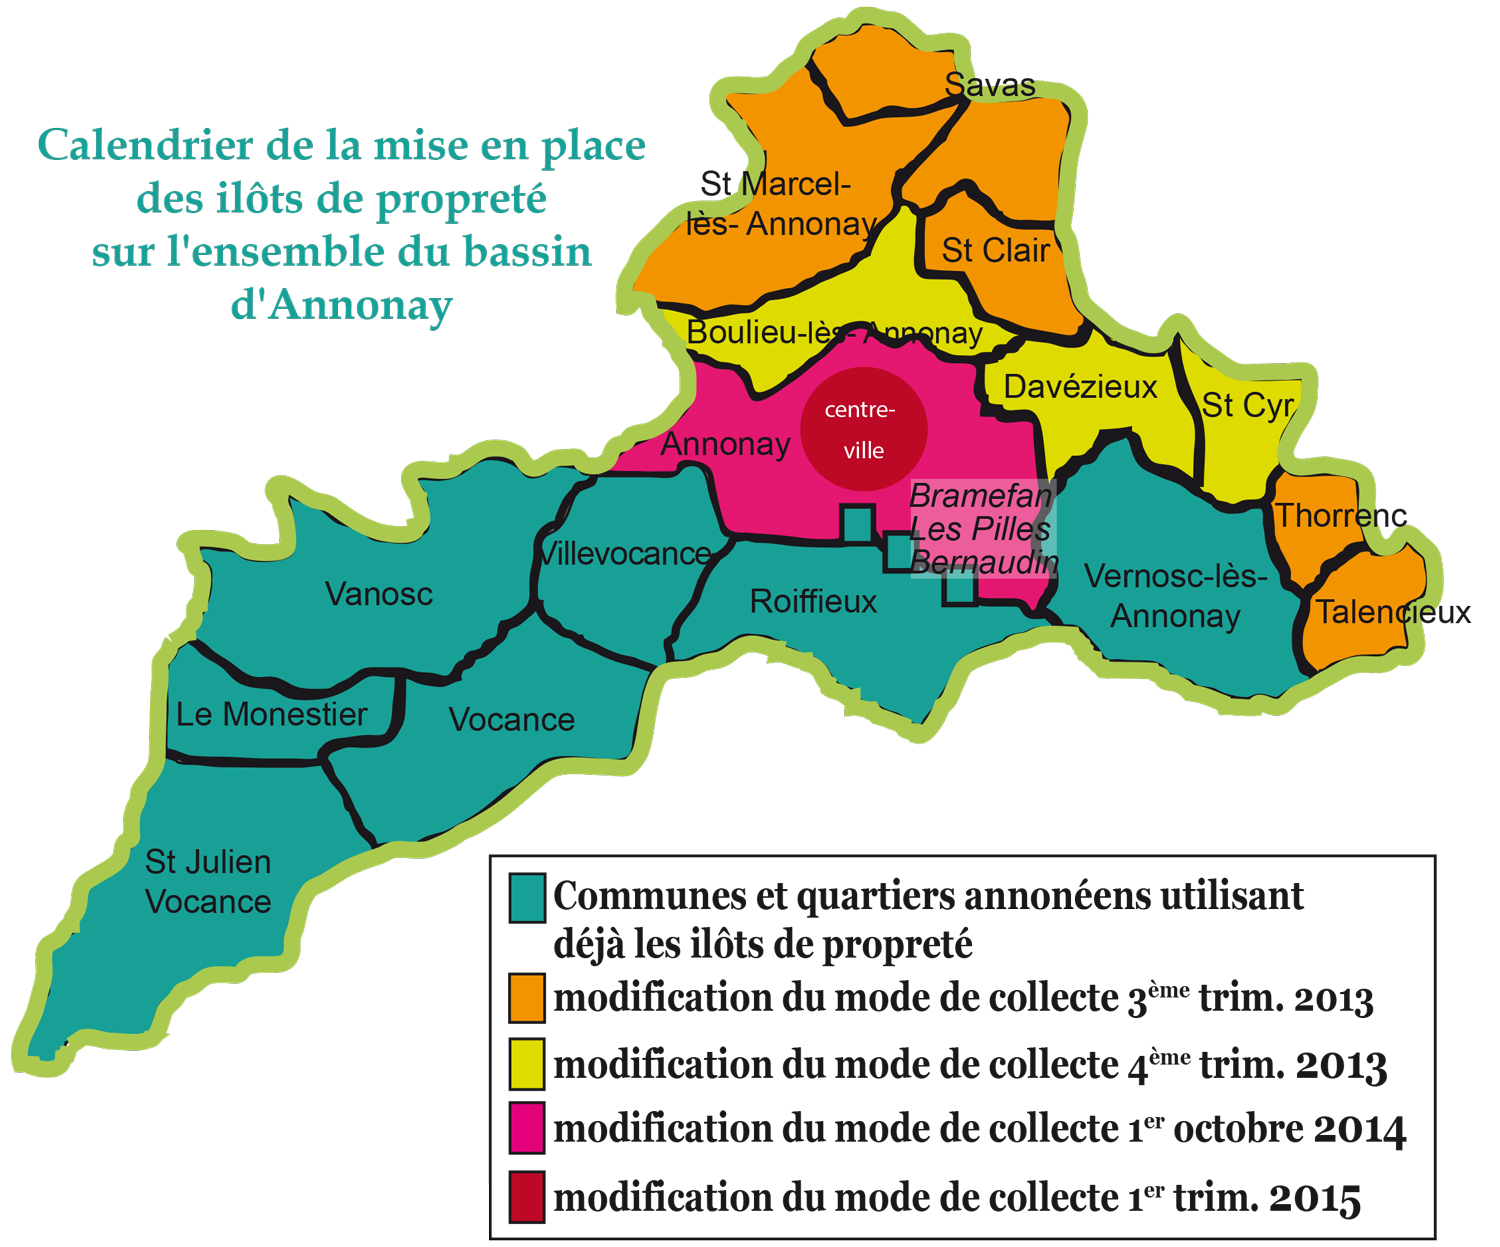 Les zones bleues et leur fonctionnement - Annonay - Ardeche